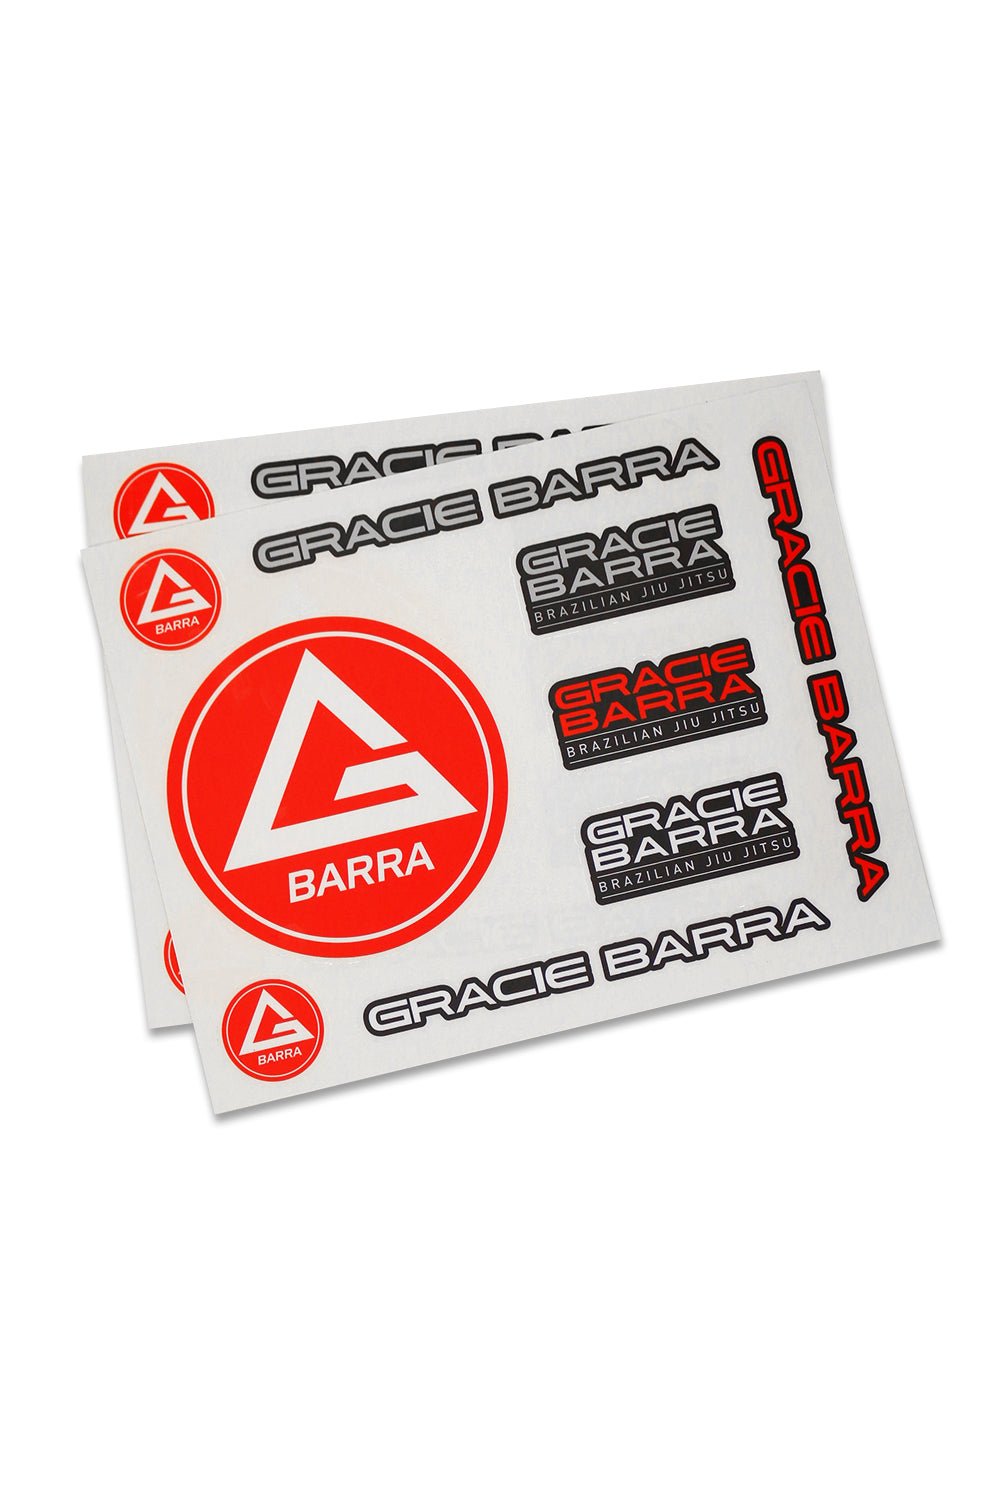 GB Assorted Matte Sticker Sheet - Red